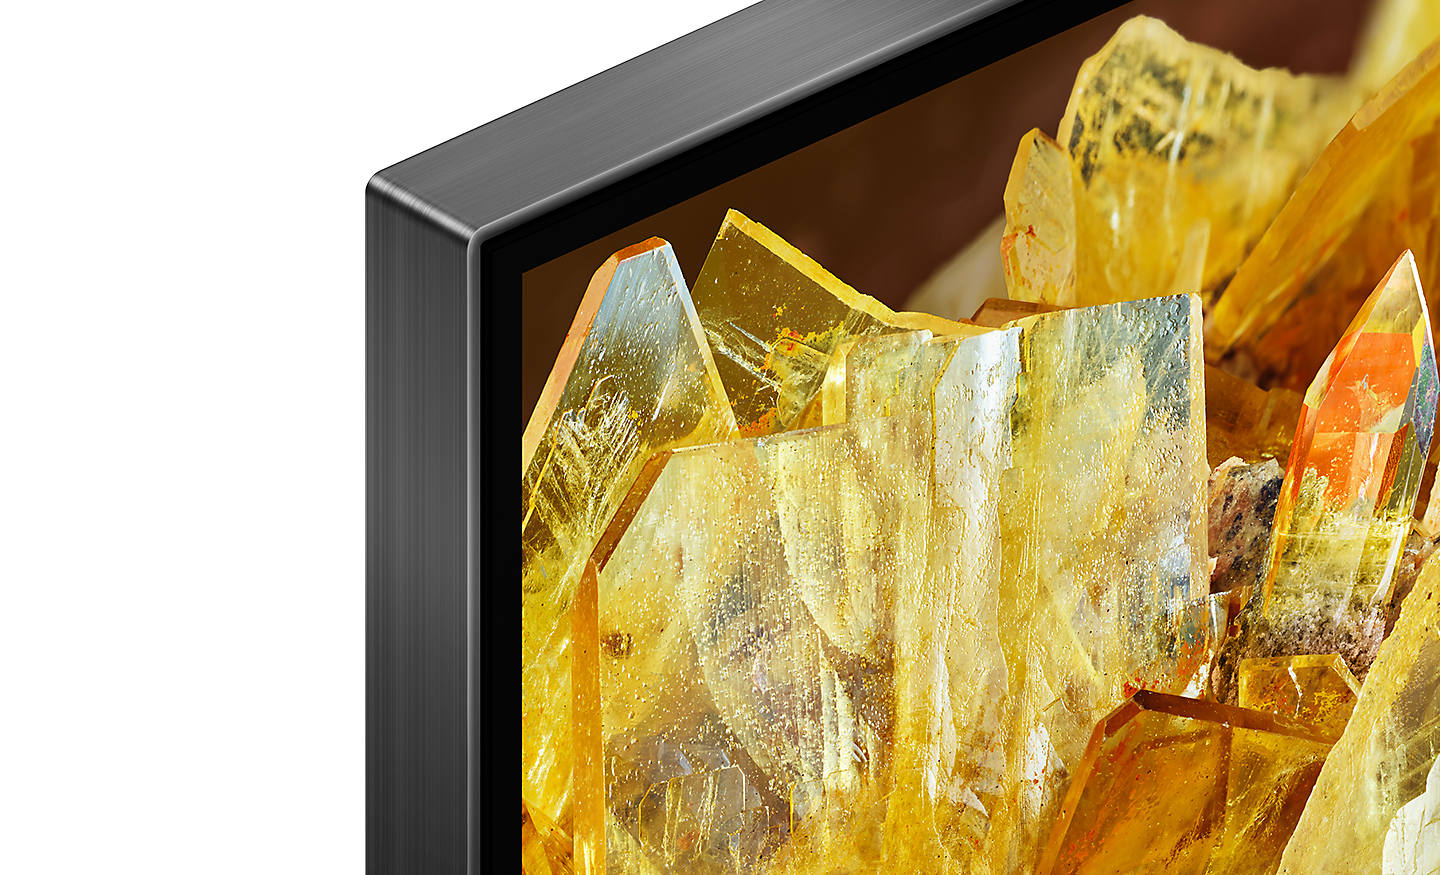 Ekranda altın rengi kristaller gösteren TV’nin köşesi